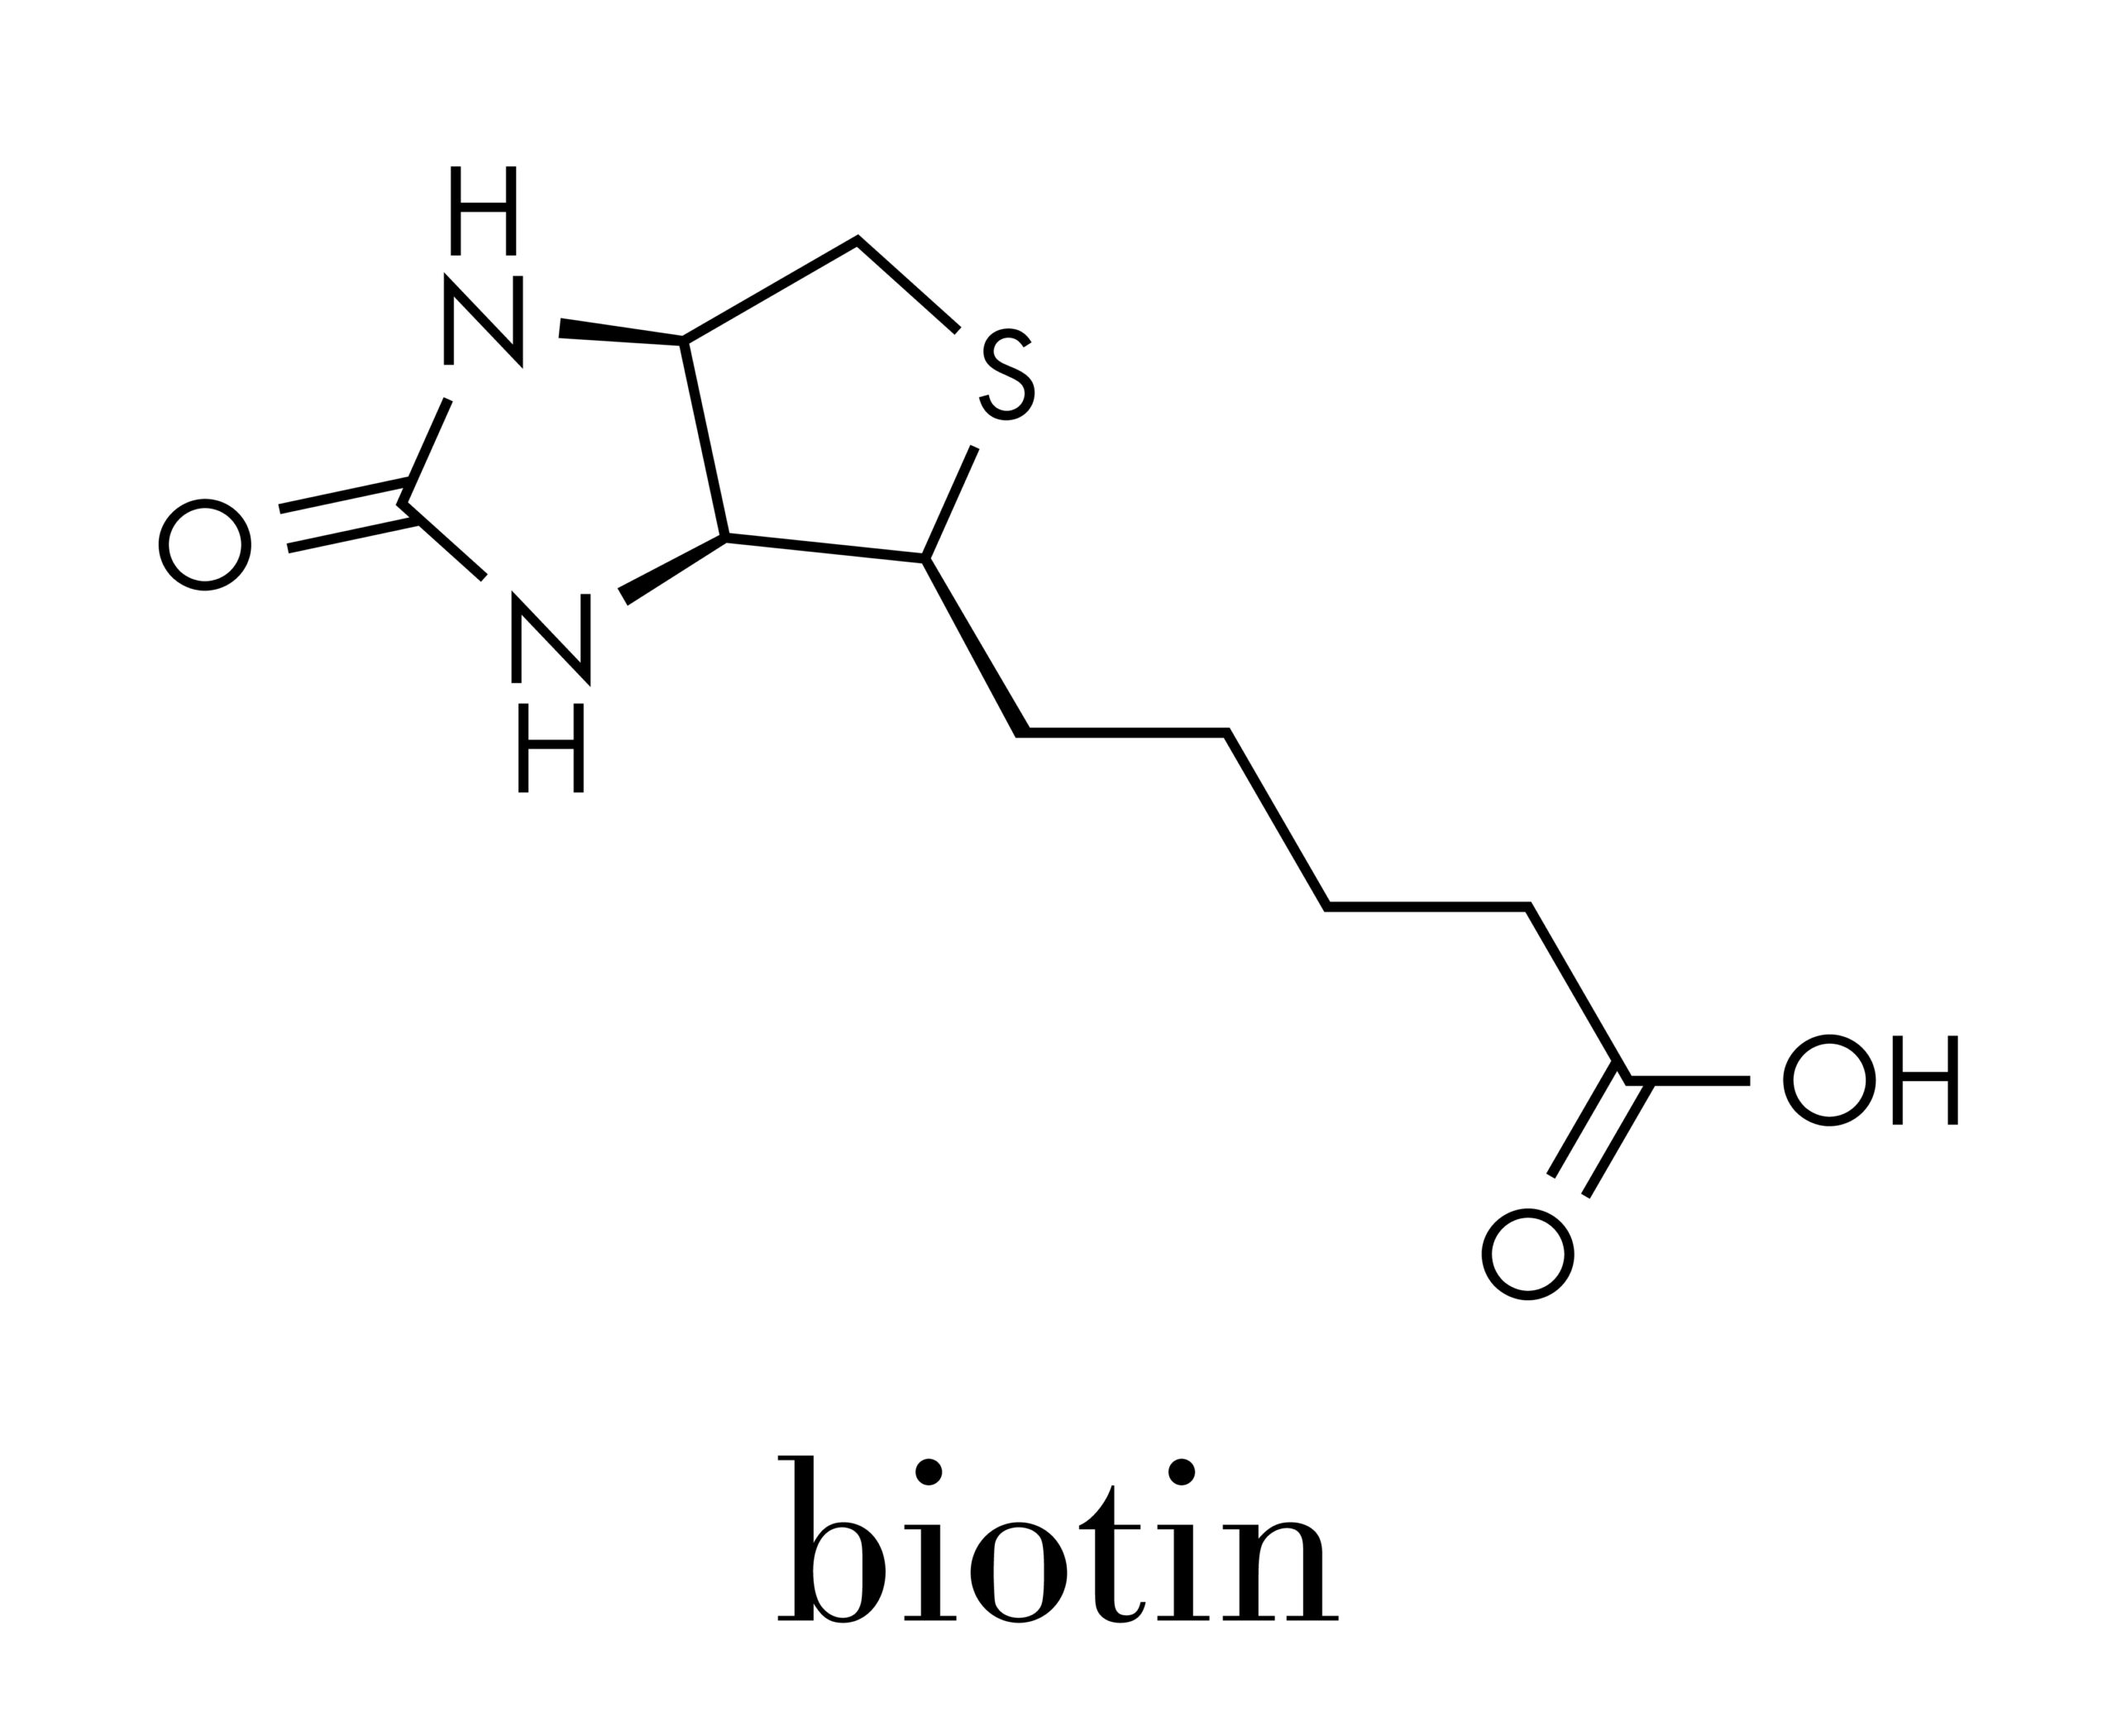 B7-vitamin